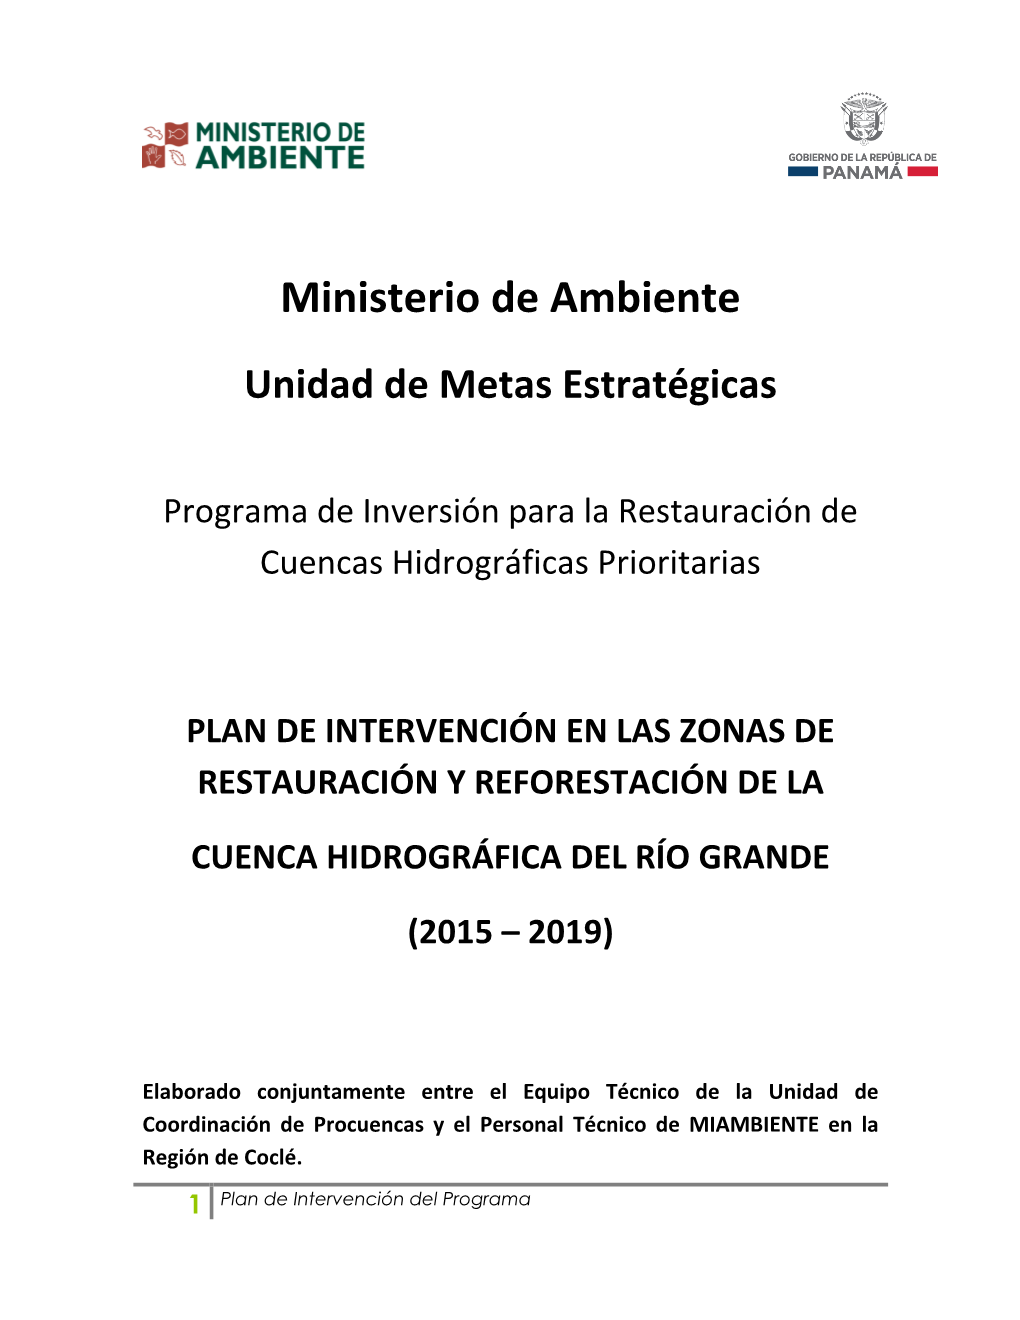 Plan De Intervencion Del Programa En Las Zonas De Restauracion Y Reforestacion De La Cuenca Hidrográfica Del Río Grande (2015